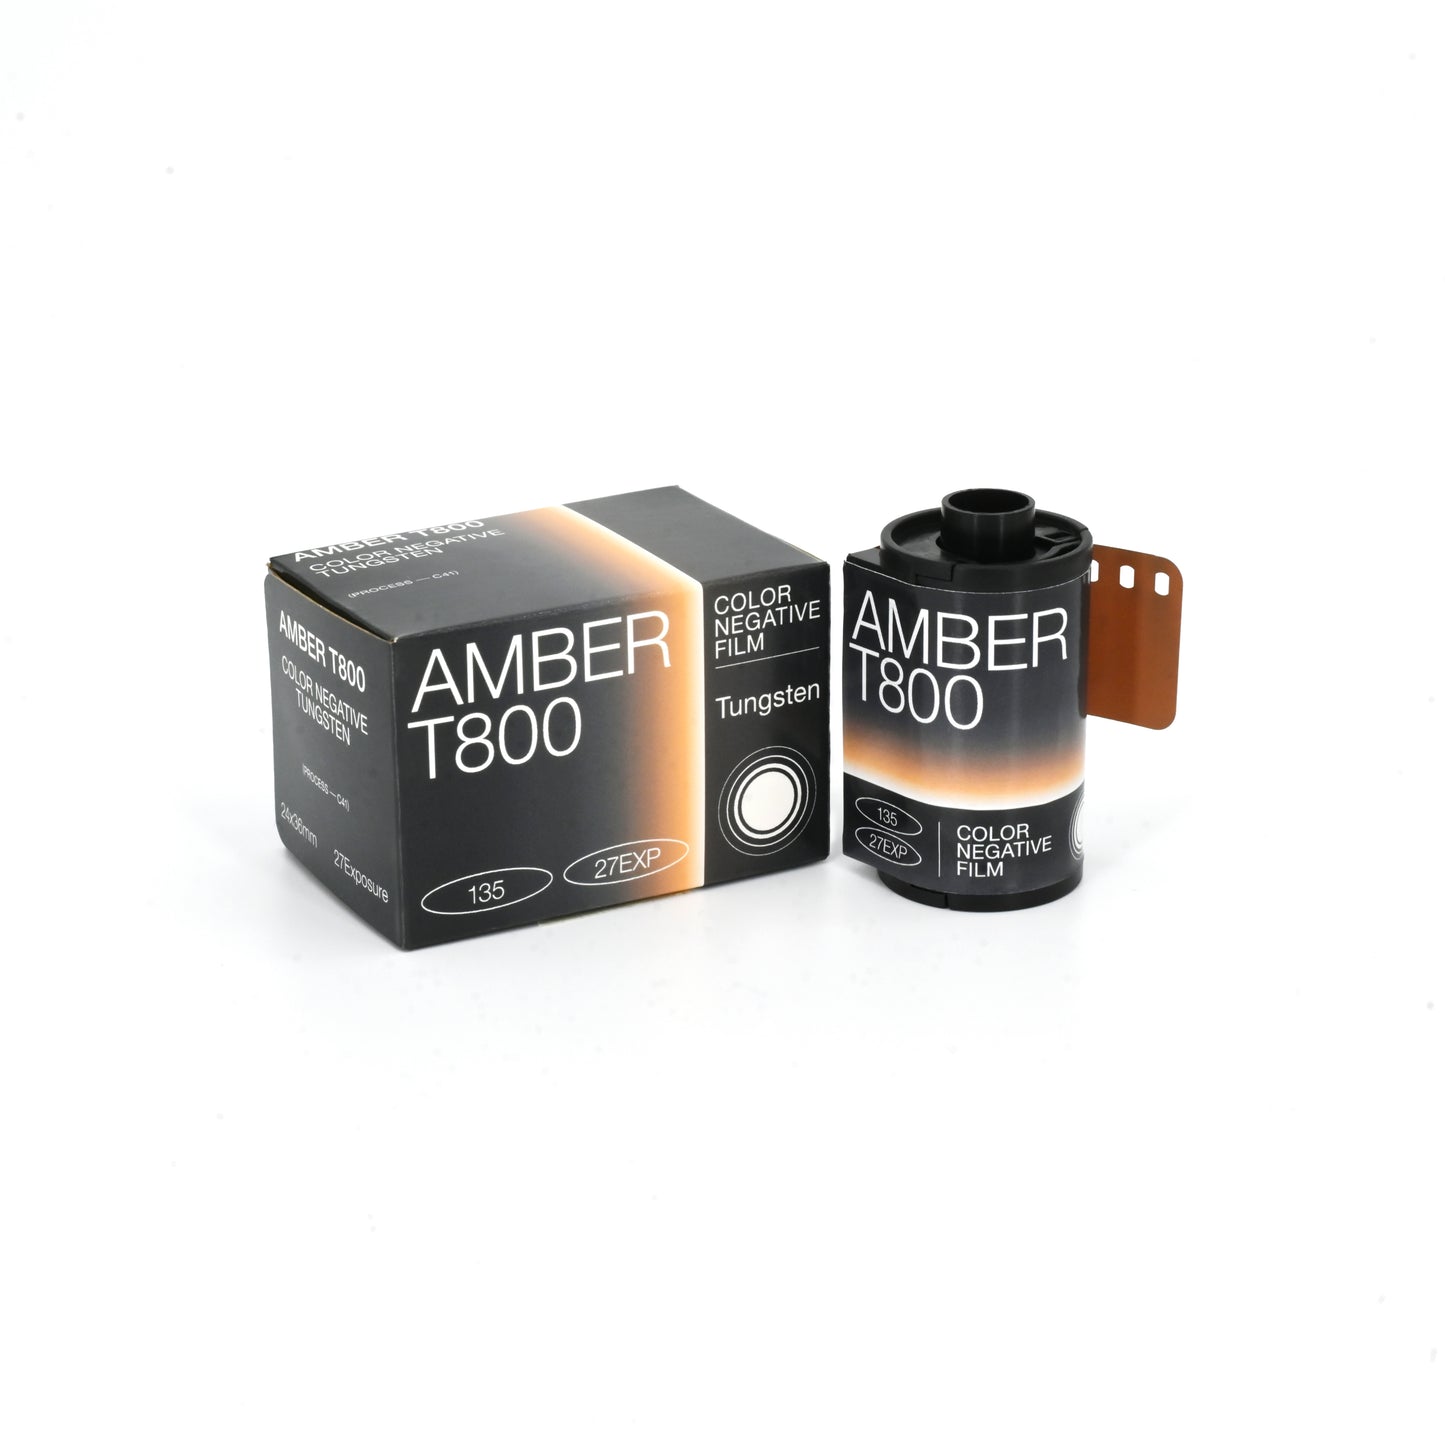 AMBER 800 Film, 27EXP